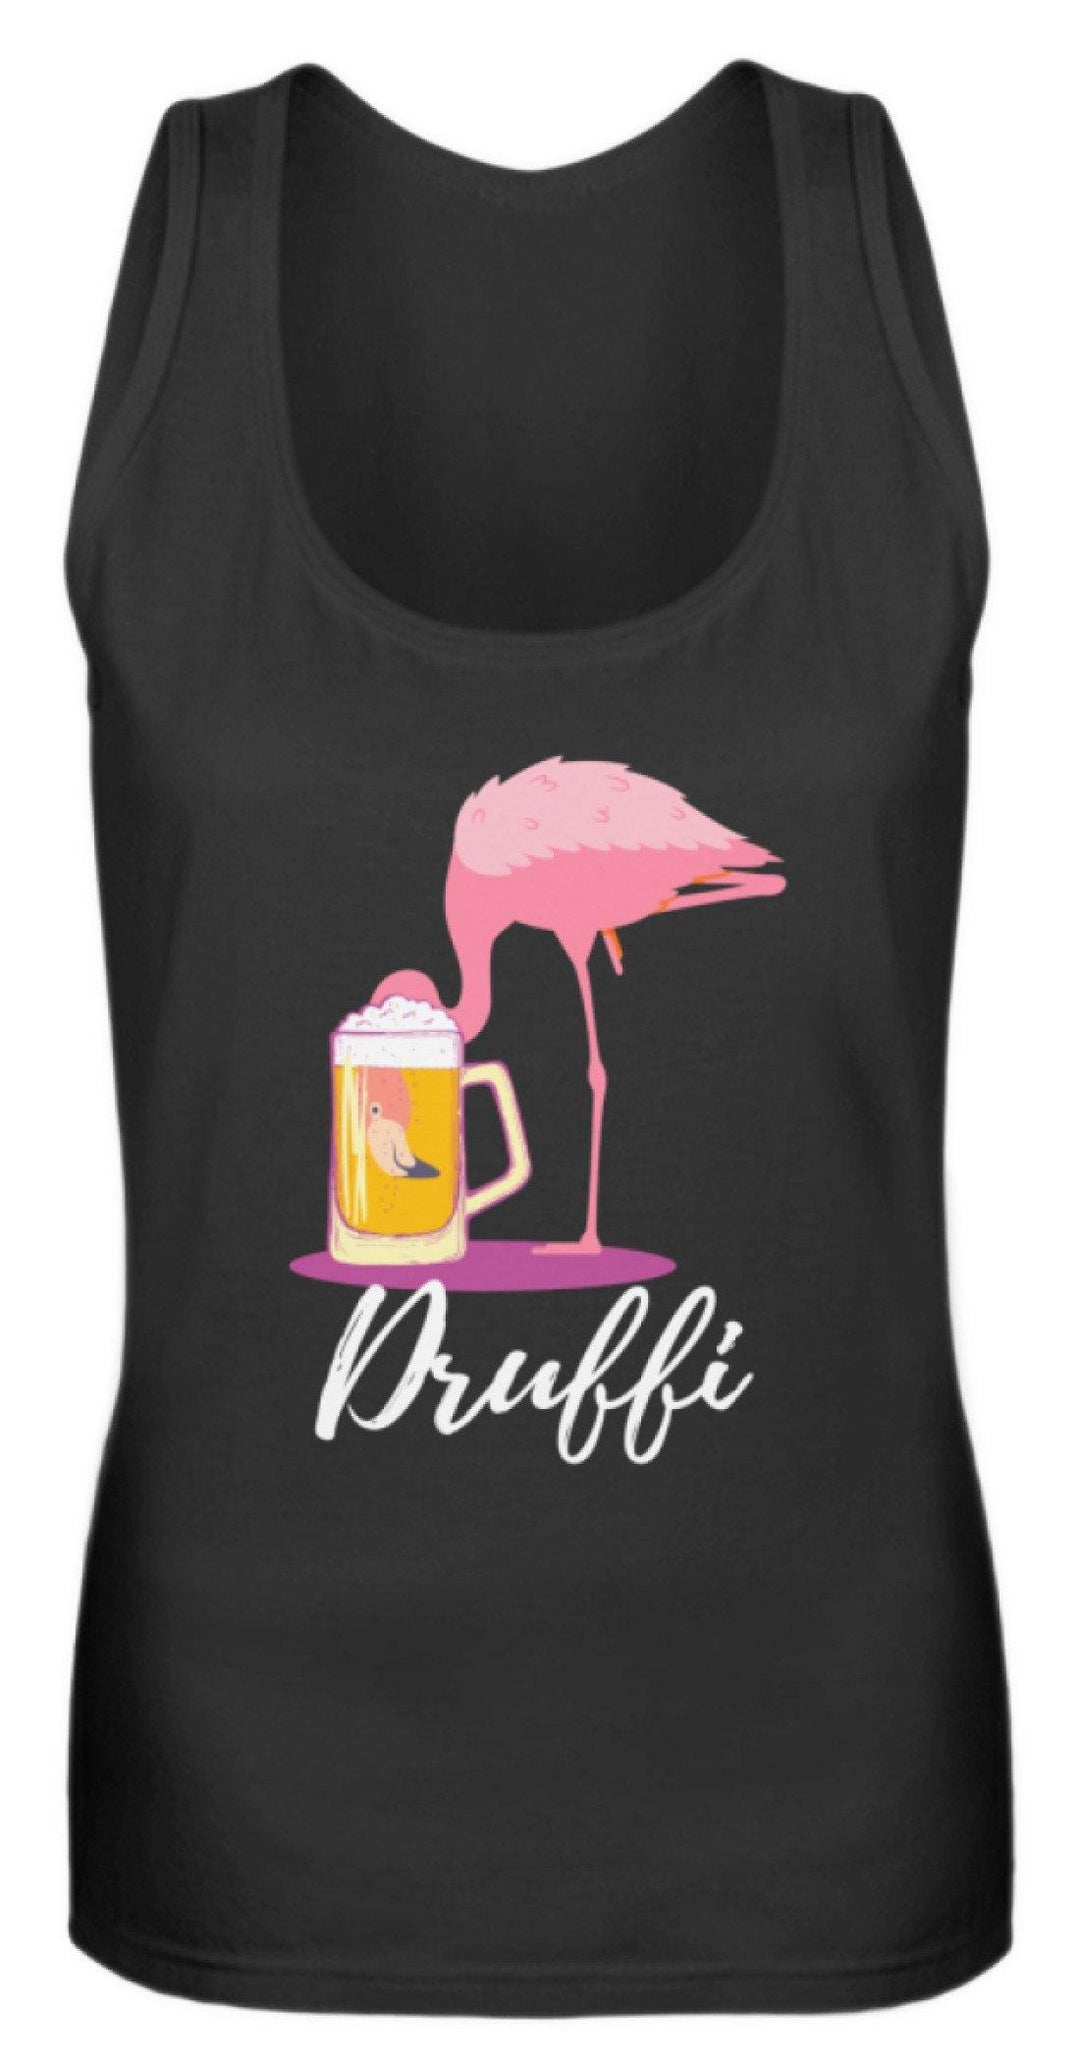 Flamingo Druffi - Words on Shirt  - Frauen Tanktop - Words on Shirts Sag es mit dem Mittelfinger Shirts Hoodies Sweatshirt Taschen Gymsack Spruch Sprüche Statement